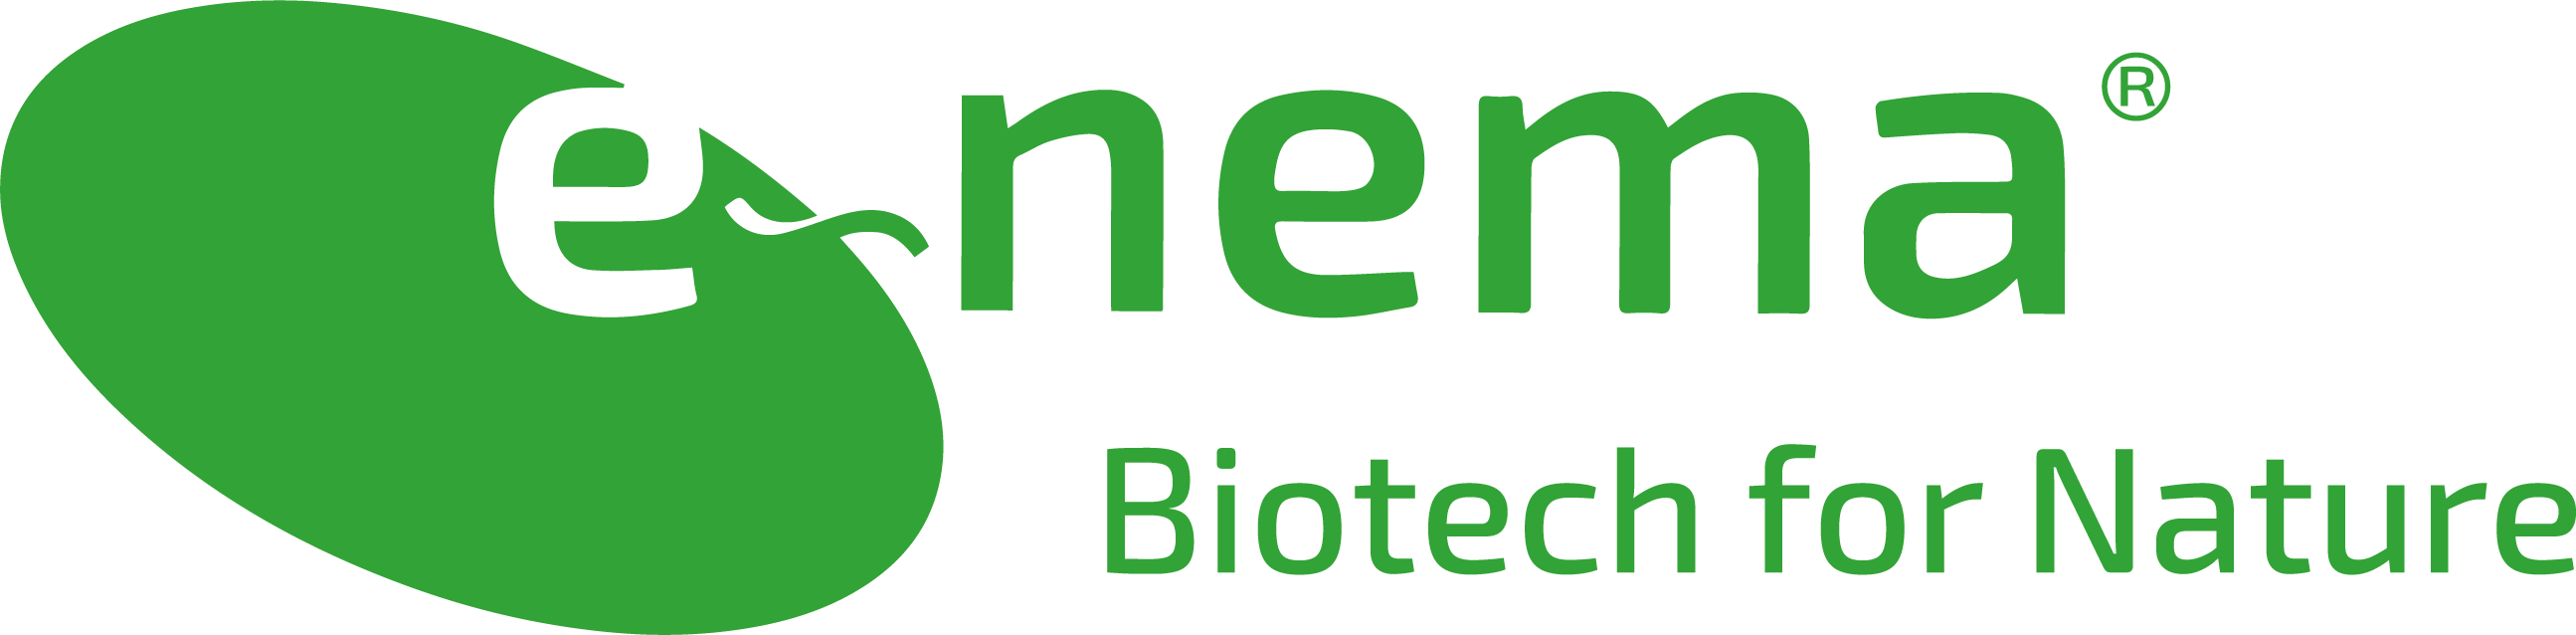 E-nema Biotech for Nature